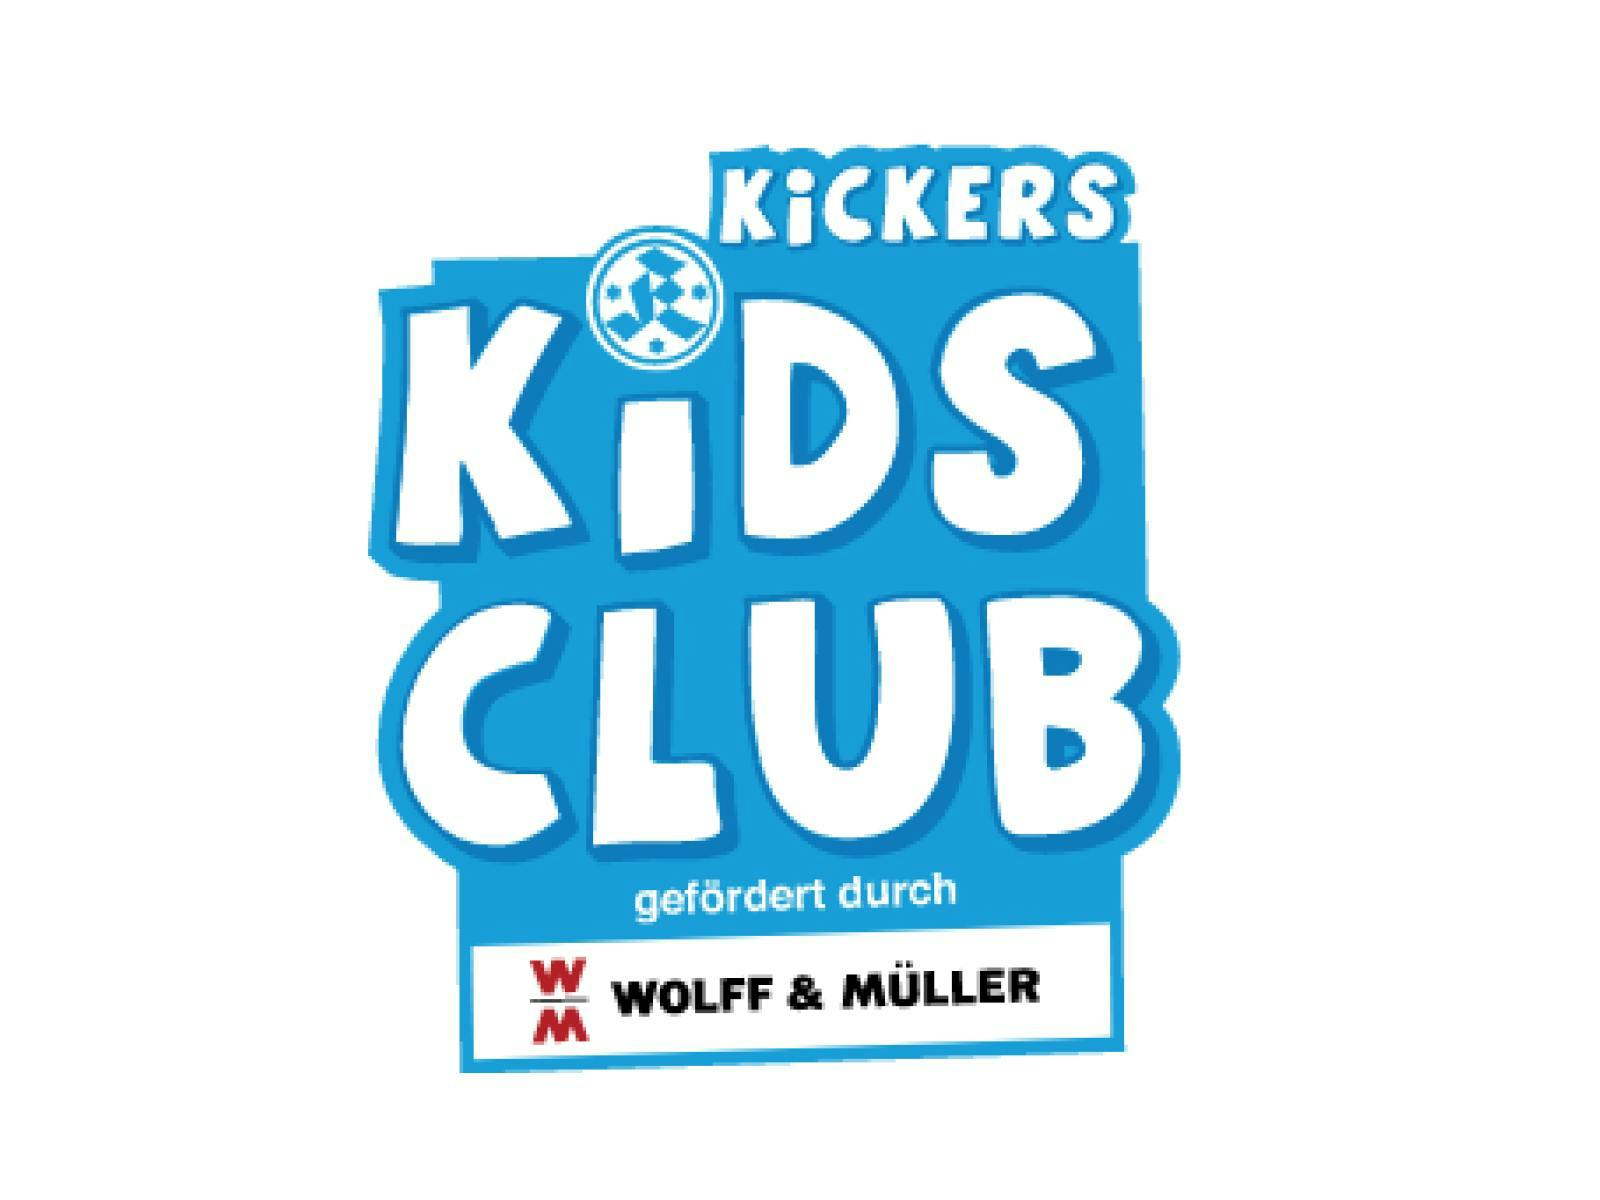 Weitere Infos zum Kids Club